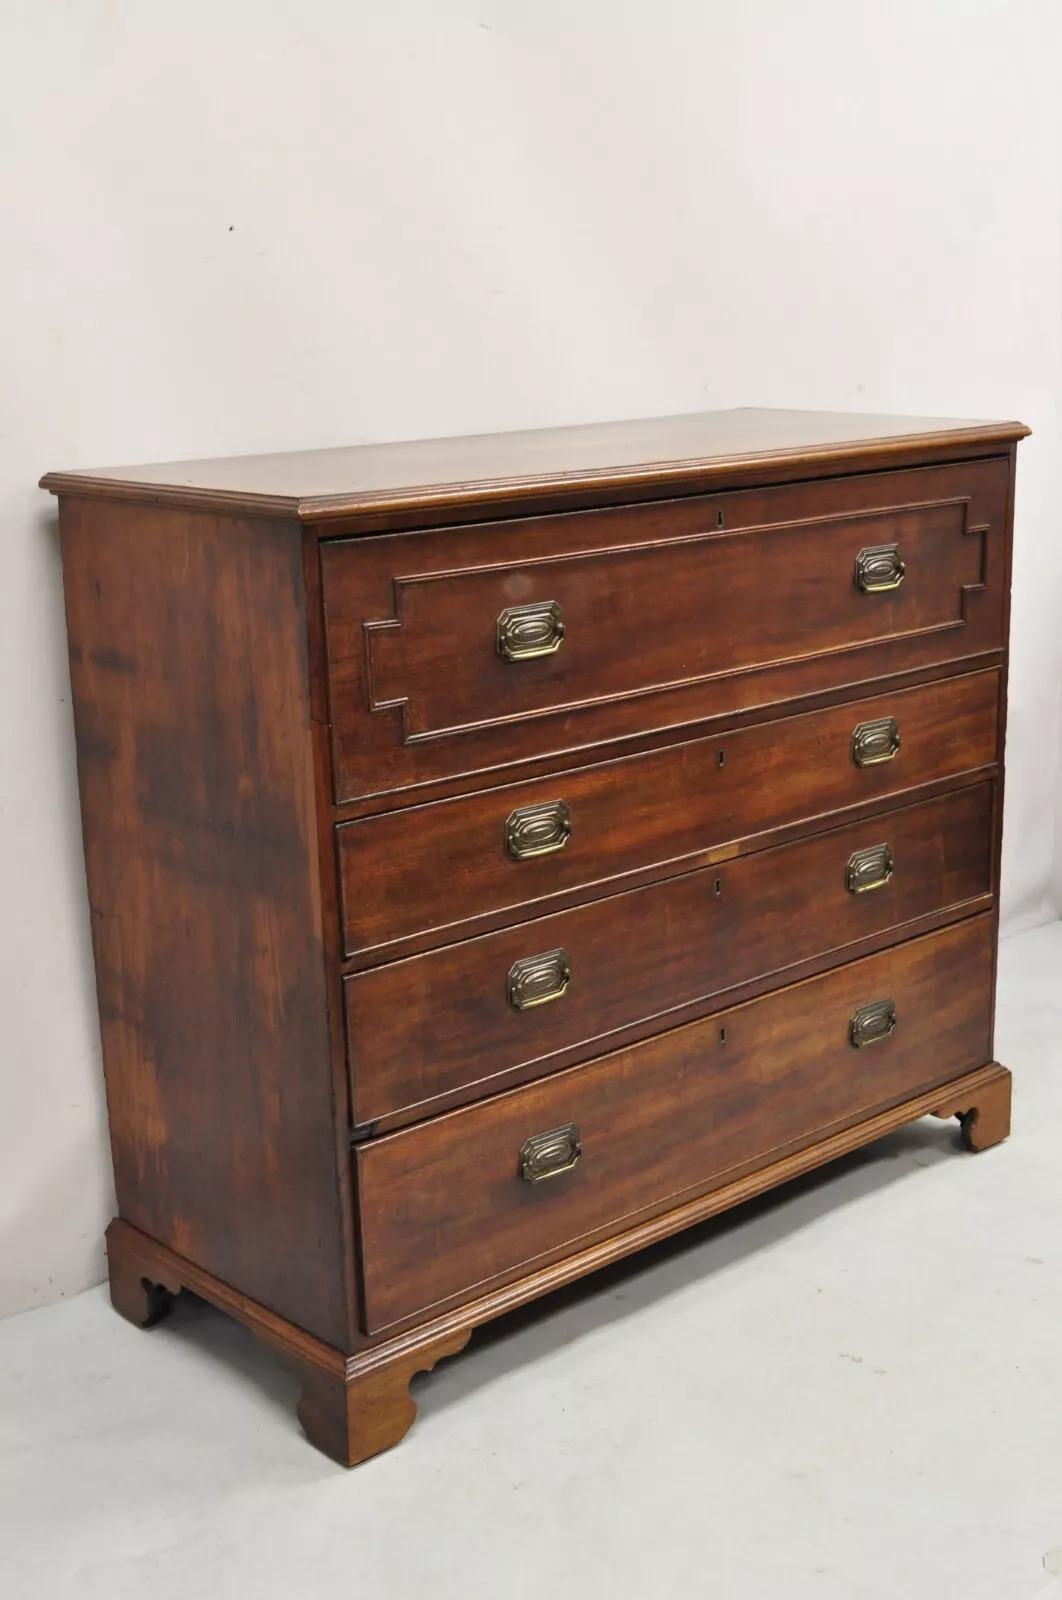 Antique English Edwardian Mahogany Chest of Drawers Secretary Desk Bureau For Sale 5